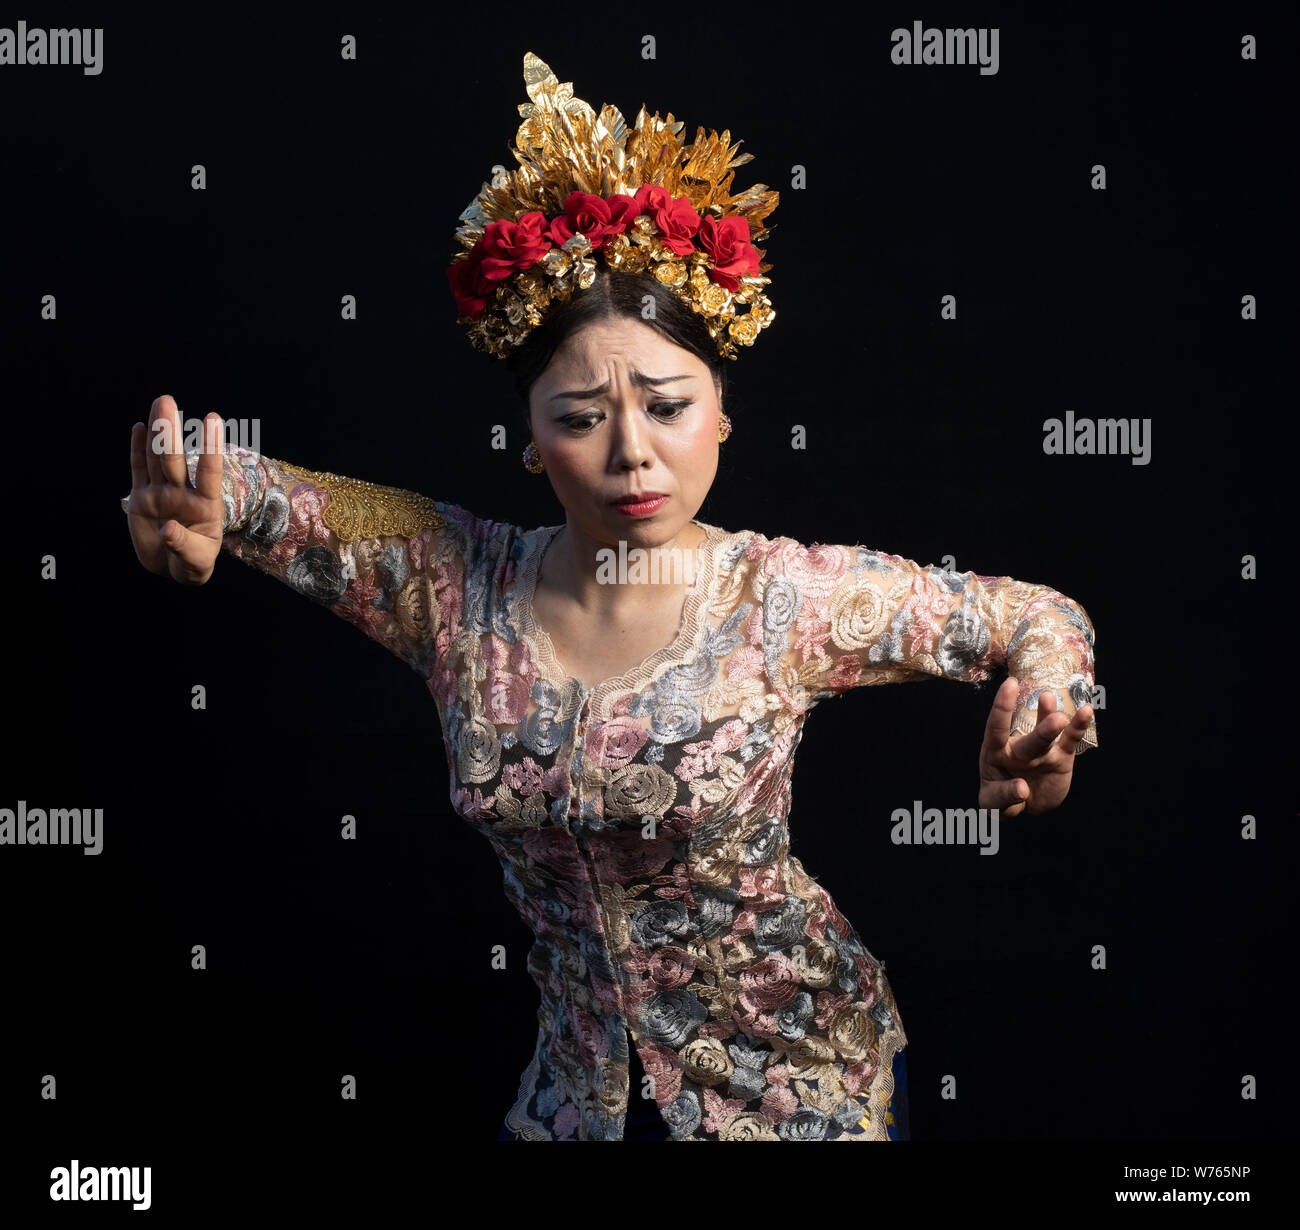 Portrait de danse balinaise et gamelan membre du groupe. La danse et la musique traditionnelles de Bali, Indonésie, Asie du Sud-Est, y compris Legong Barong Danse de bienvenue Banque D'Images